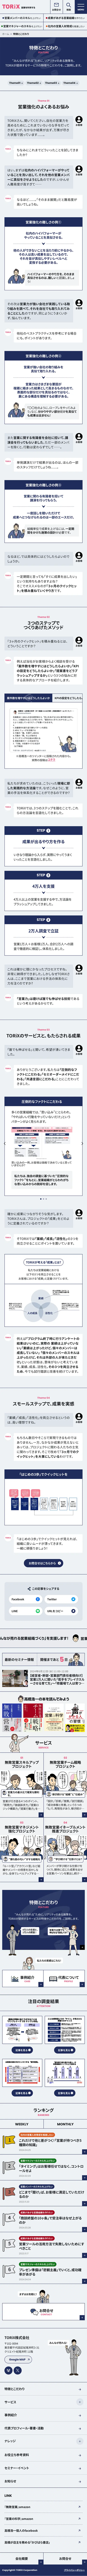 TORiX株式会社 | 営業を科学する |『無敗営業』シリーズの著者、高橋浩一による“みんなが売れる”ためのメディアのモバイルサイズのAboutページ画像